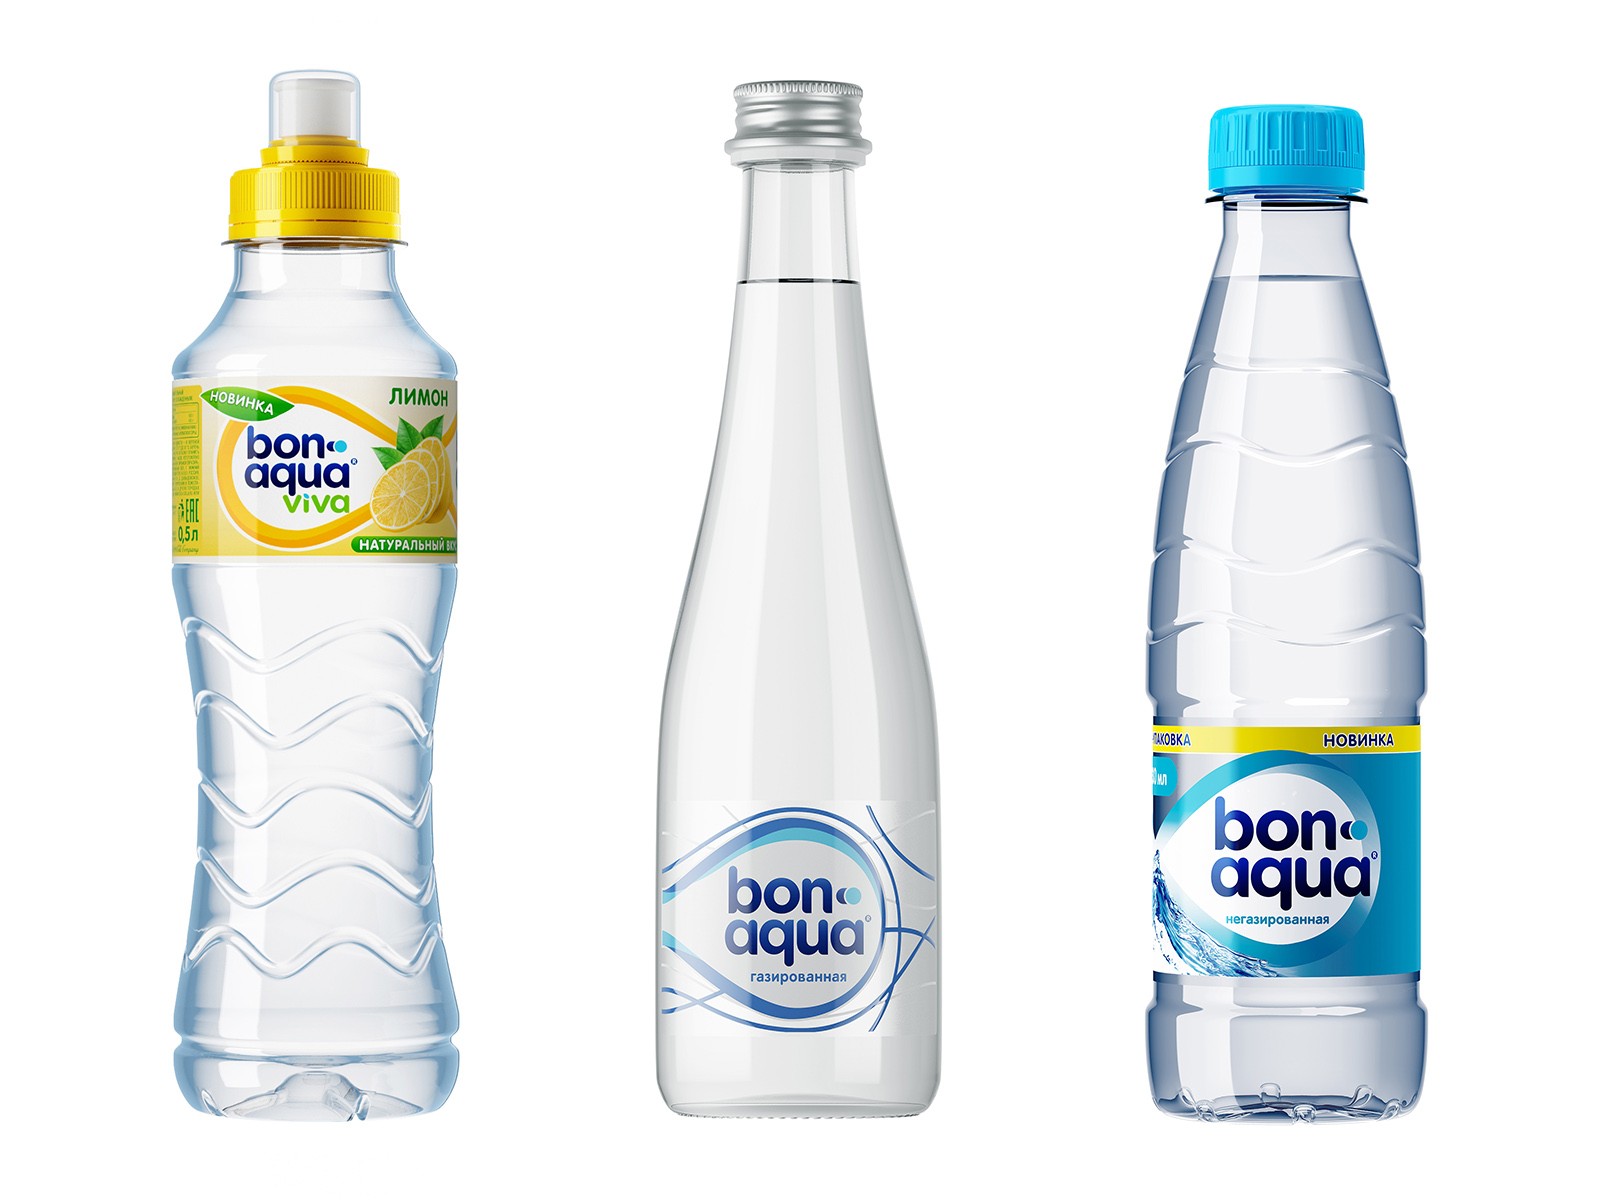 Aqua tofana bottle